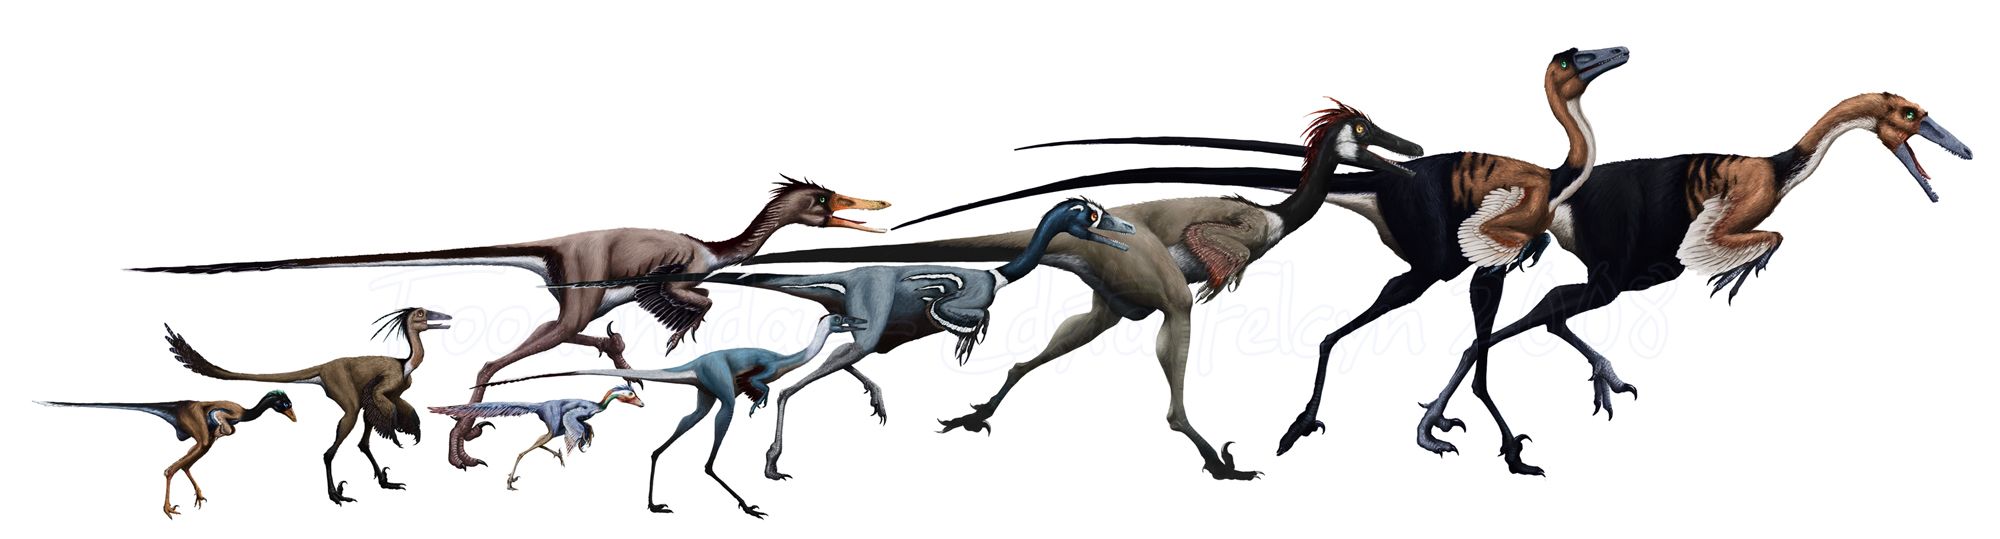 Một loài khủng long mới được phát hiện tại Tây Ban Nha có vẻ ngoài gần giống như loài chim hiện đại - Ảnh 1.